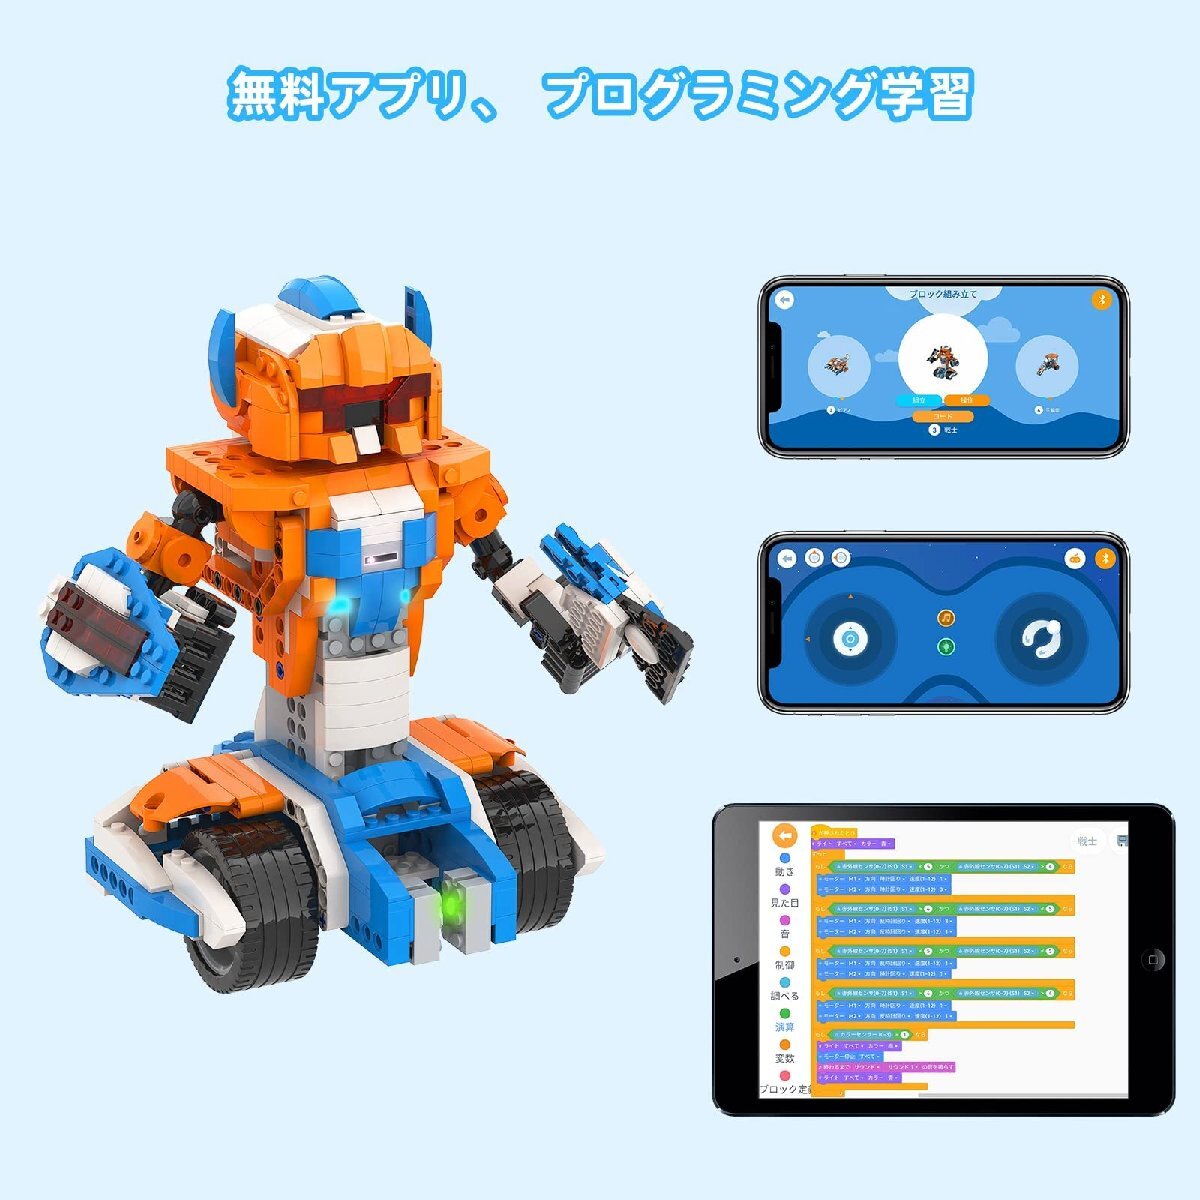 Apitor Robot X 新規 プログラミング ロボット 子供のおもちゃSTEM教育ビルディングブロック 12-in-1リモコン玩具 小学生プロ_画像4